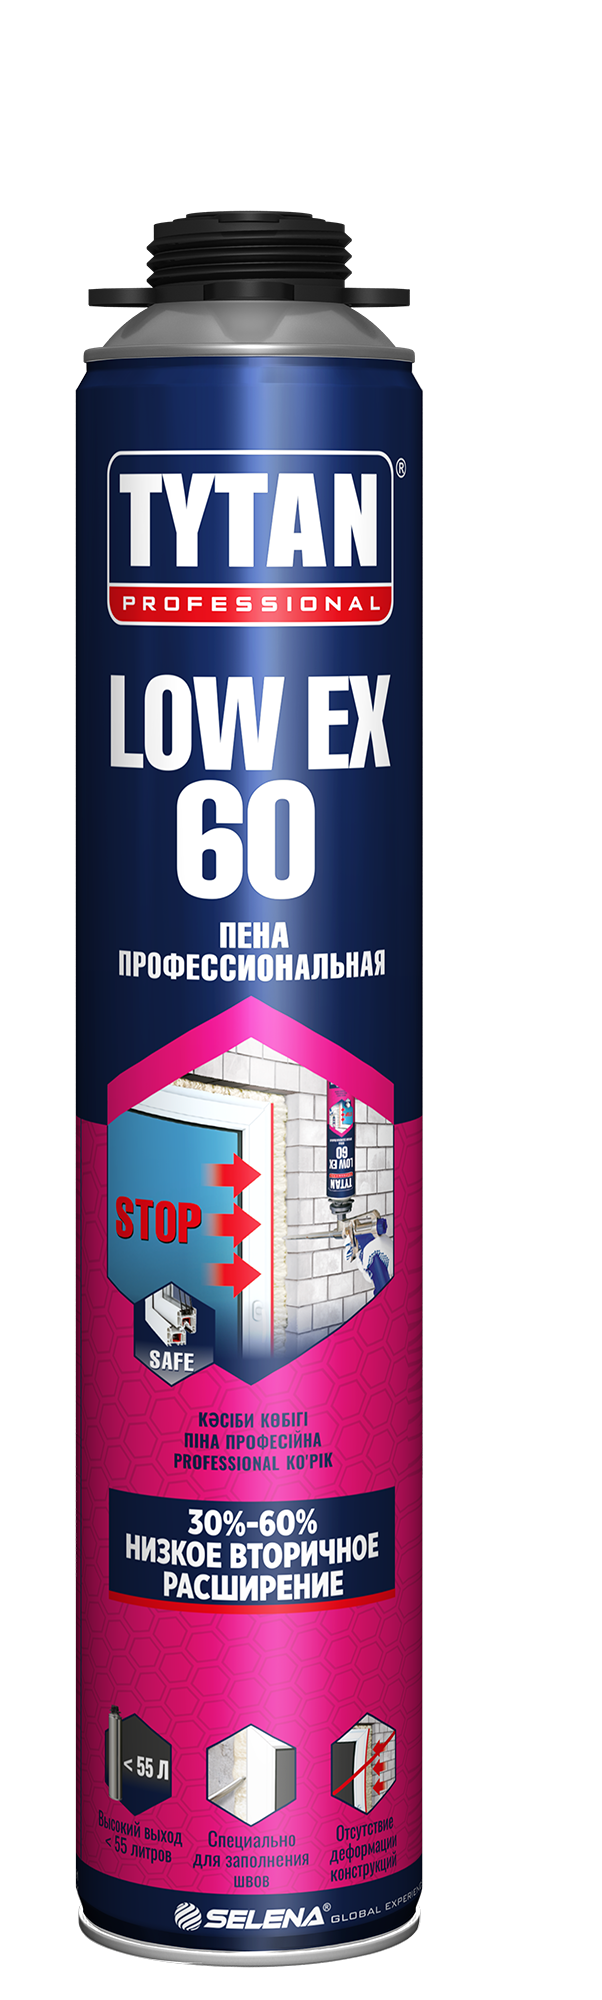 Tytan Professional LowEx 60 пена профессиональная 750 мл (12 шт.)